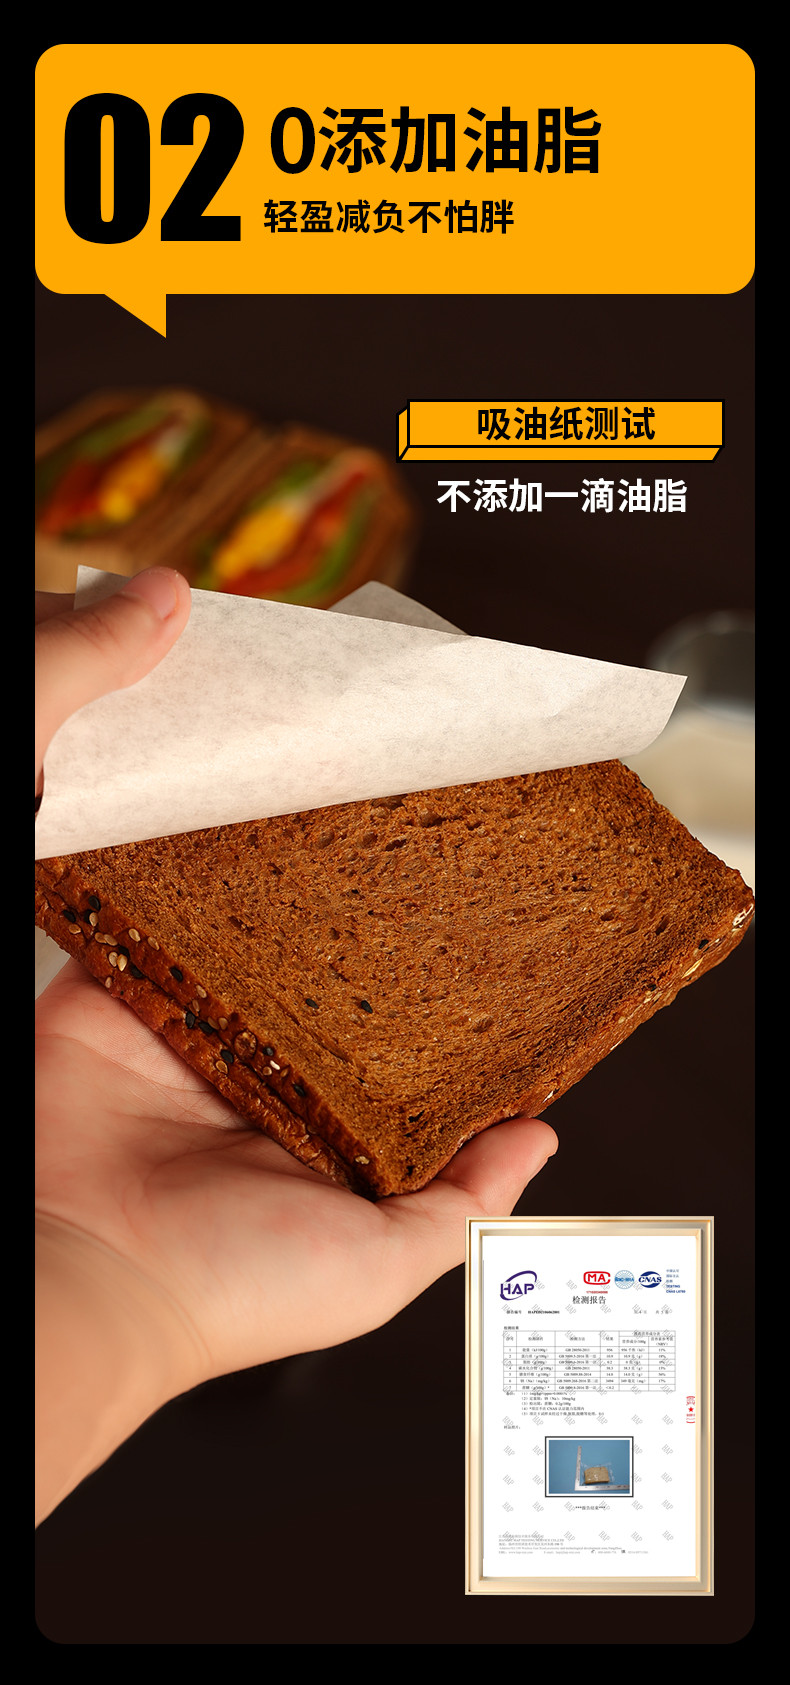 木马季  凤台邮政消费帮扶白芸豆面包早餐软面包整箱批发价